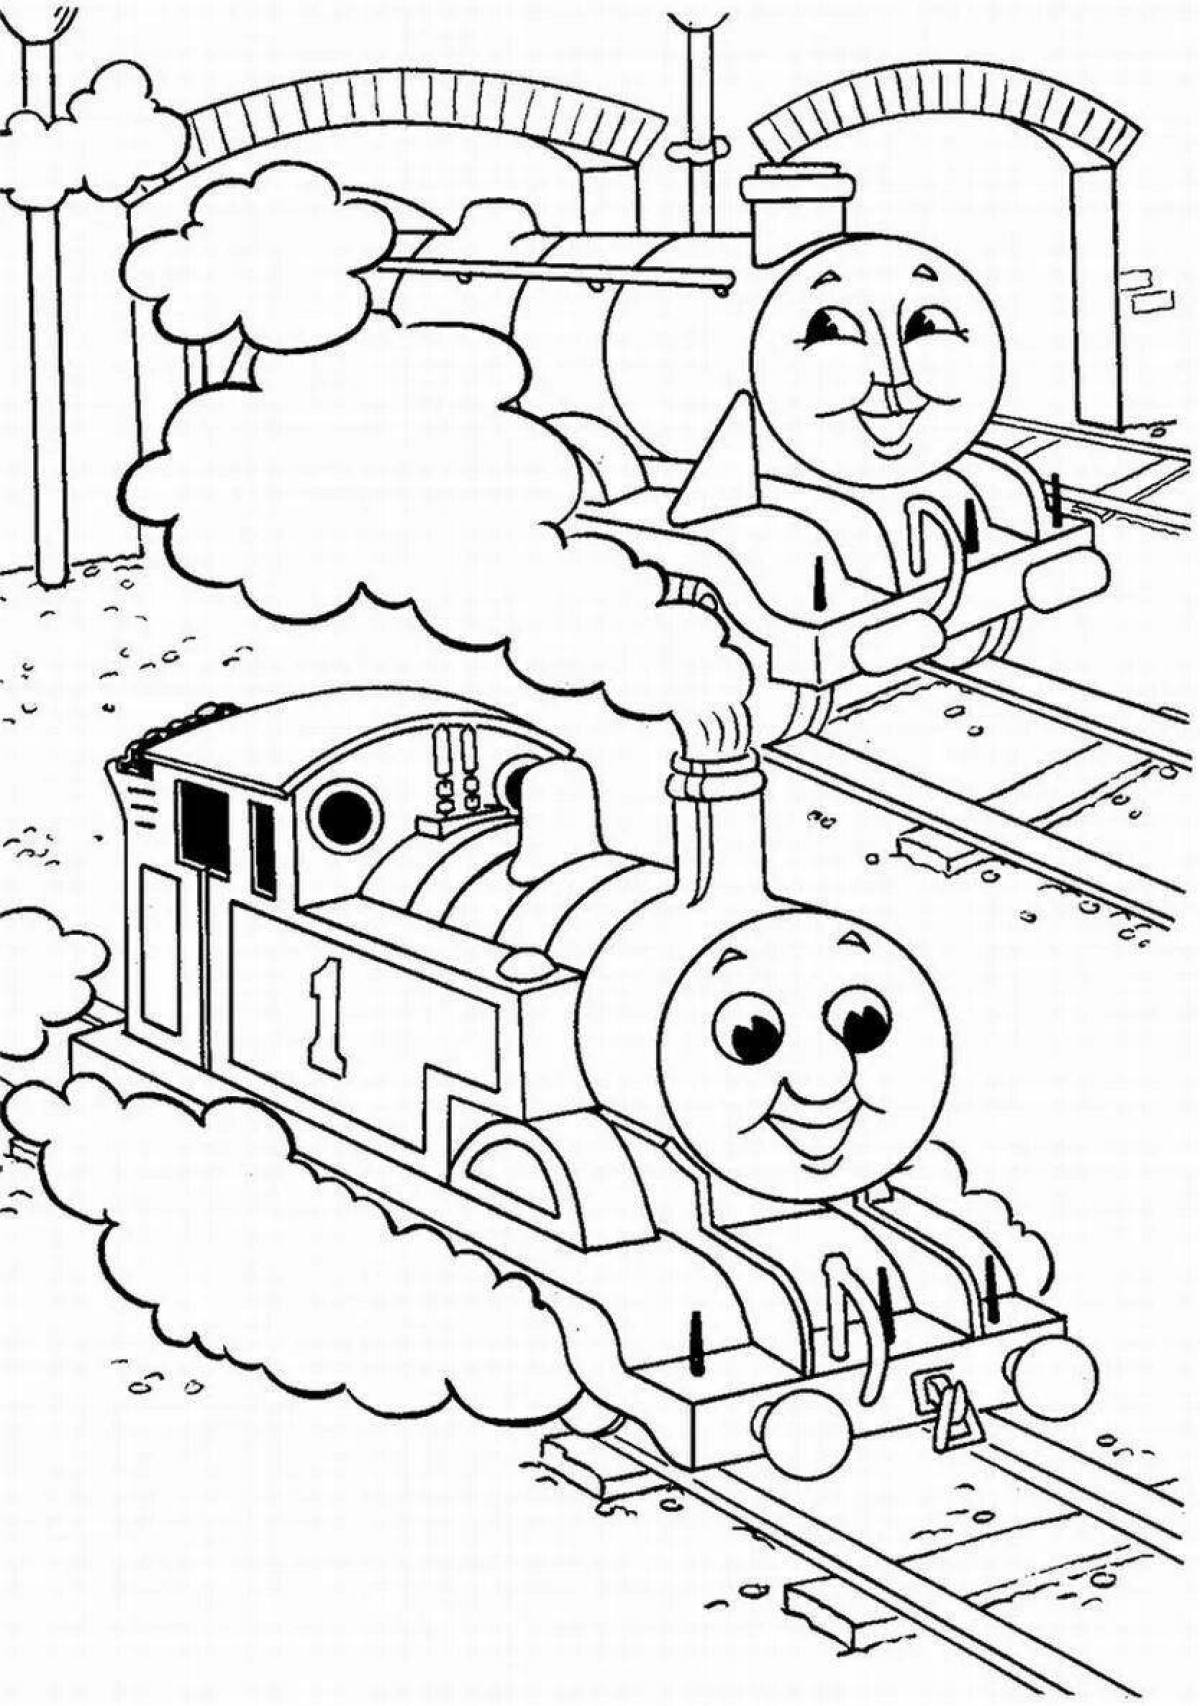 Юмористическая раскраска поезда томаса